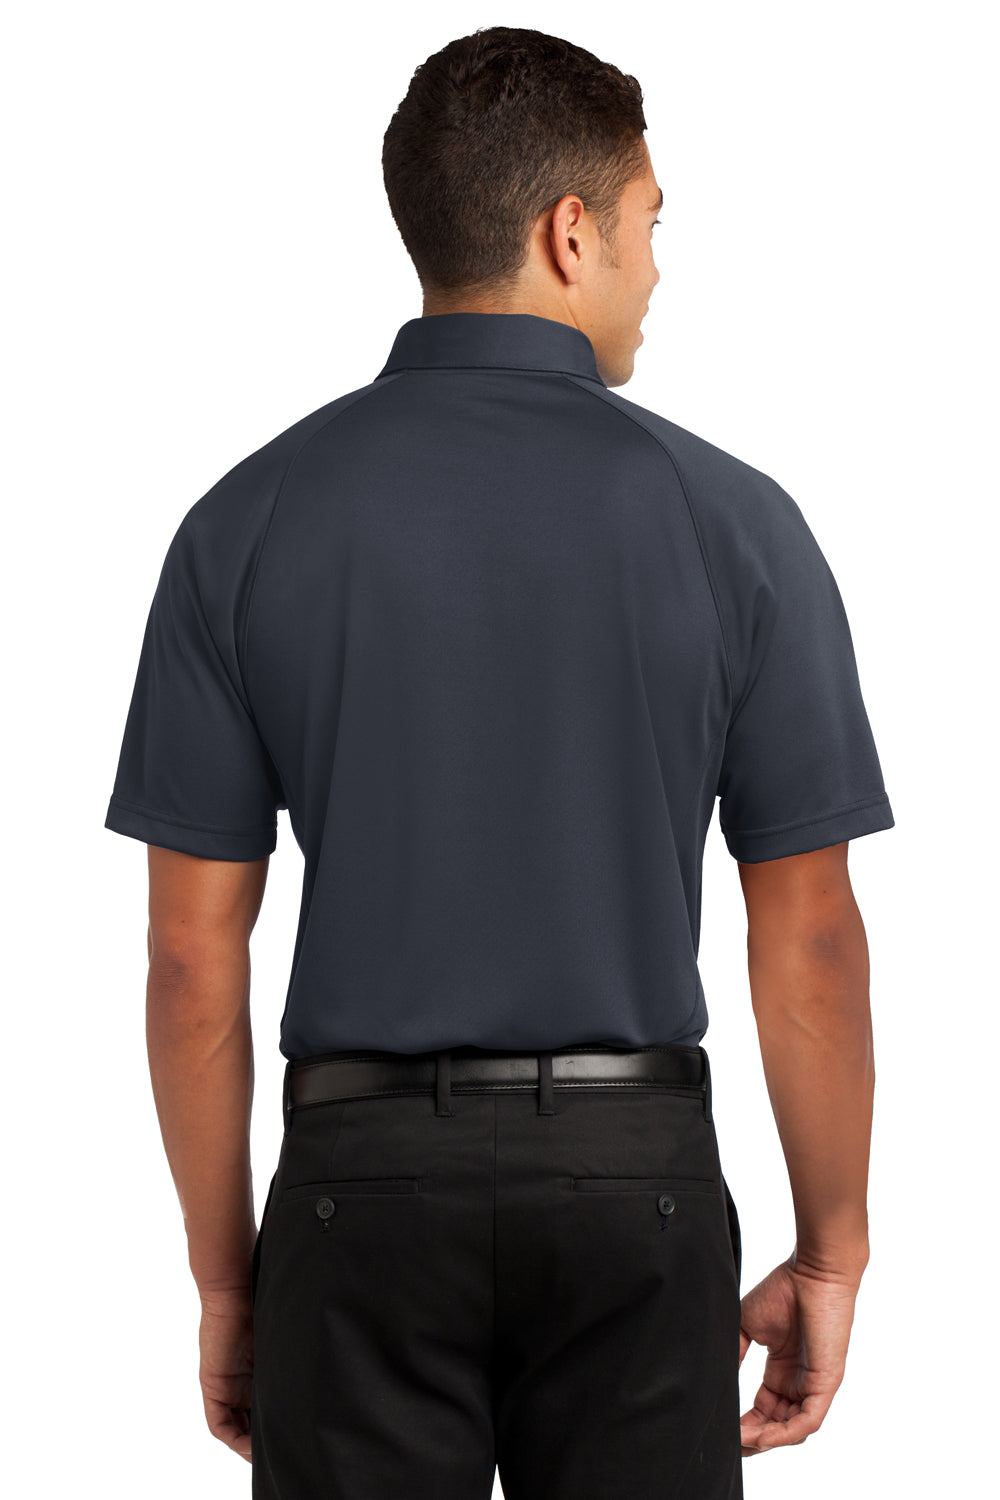 Sport-Tek ST600 Mens Dry Zone Moisture Wicking Short Sleeve Polo Shirt Navy Blue/Grey/White Back